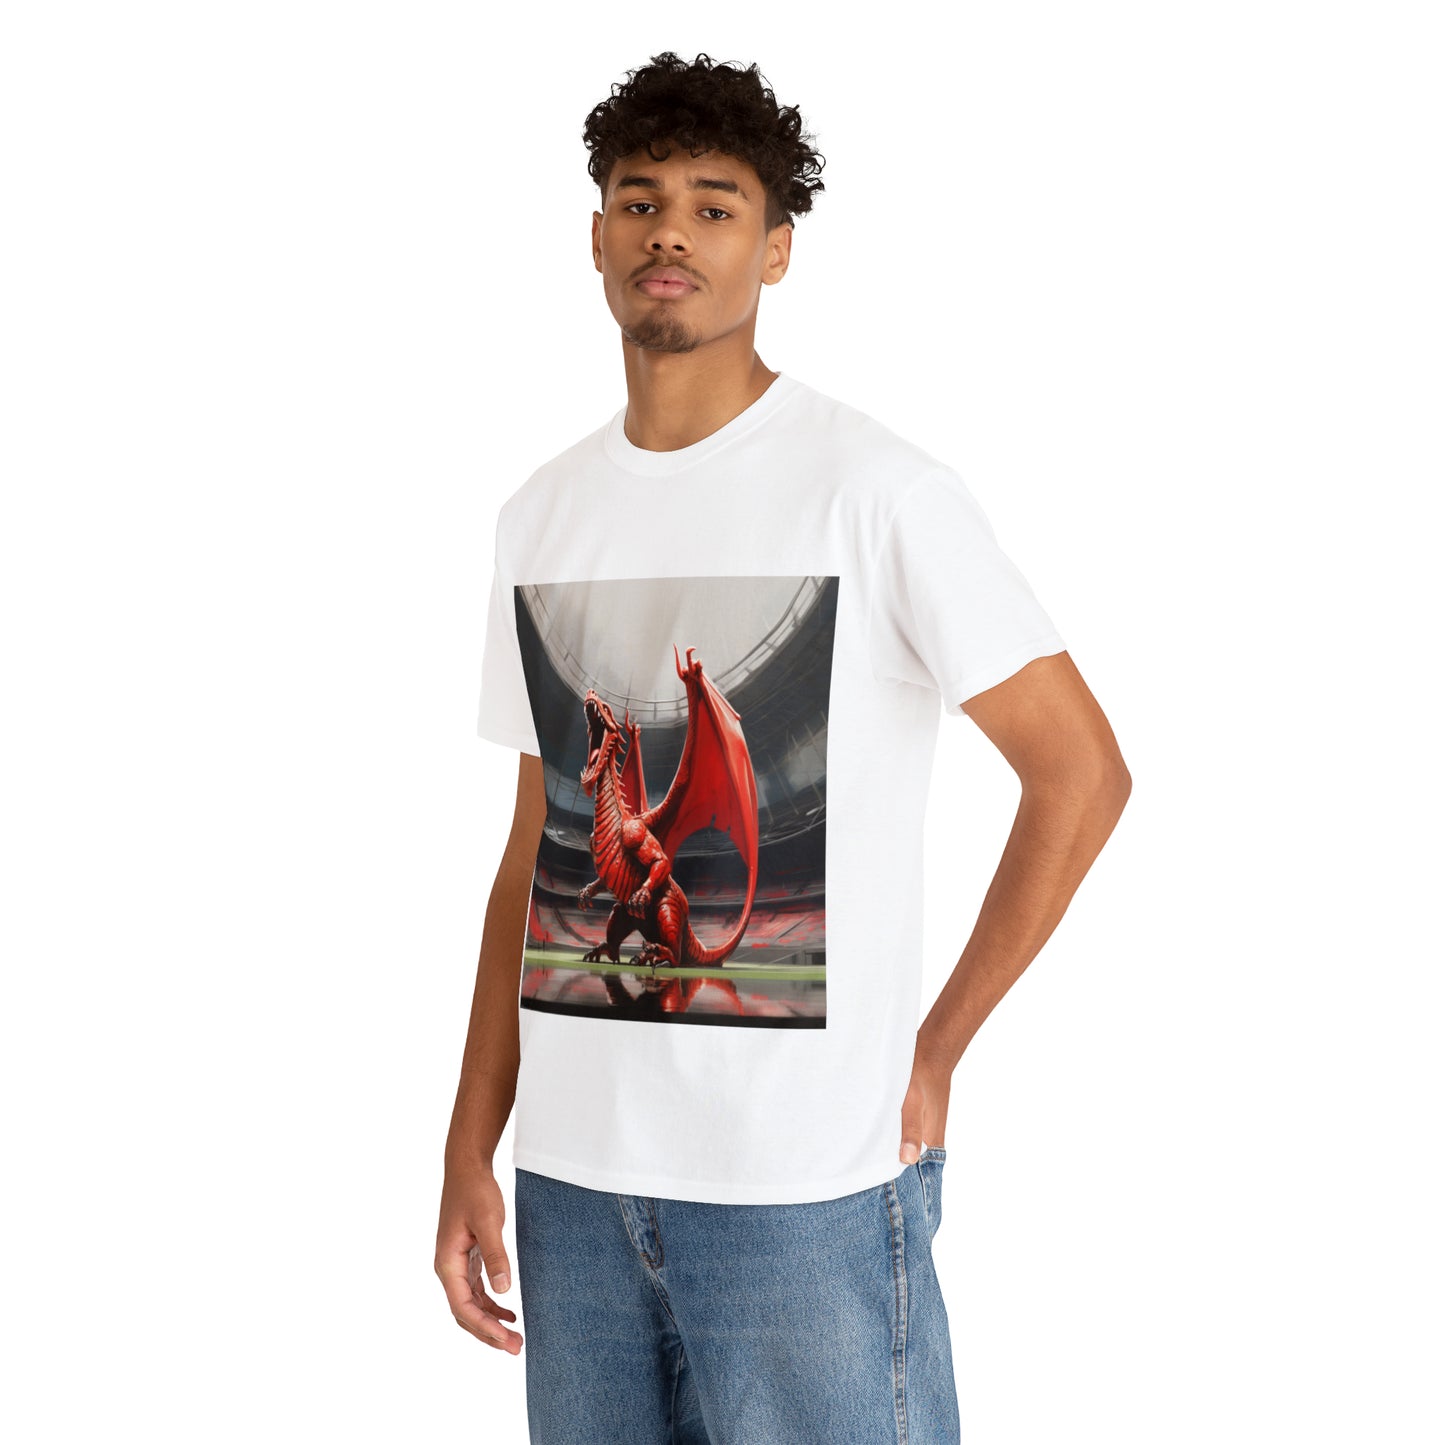 Welsh Dragon 2 - light shirts